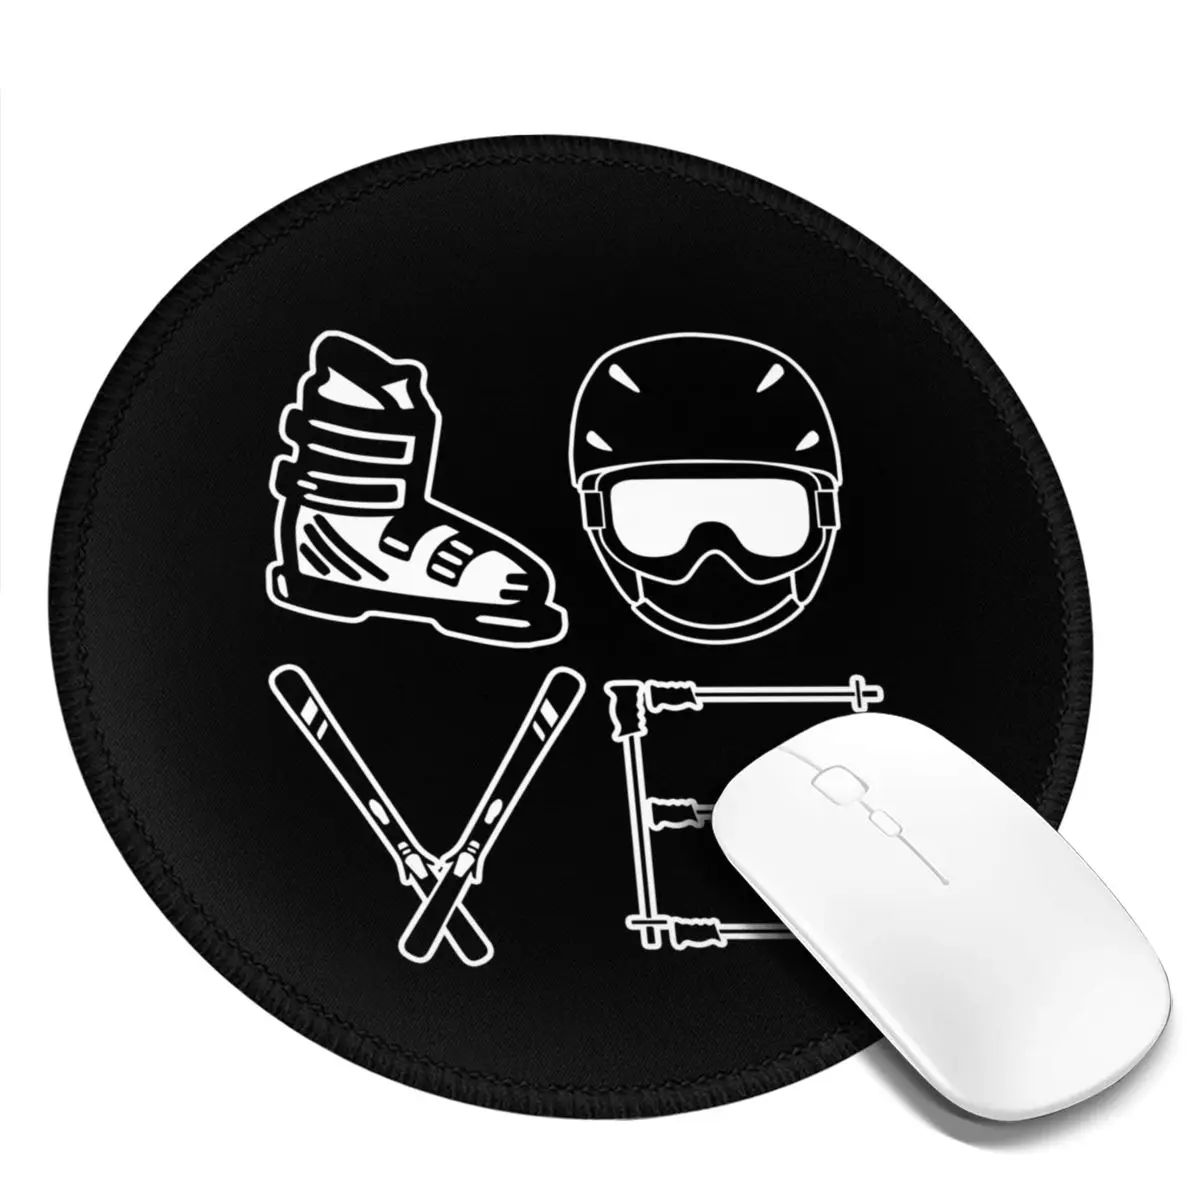 Коврик для мыши Skier лучший резиновый коврик катания на лыжах противоскользящий